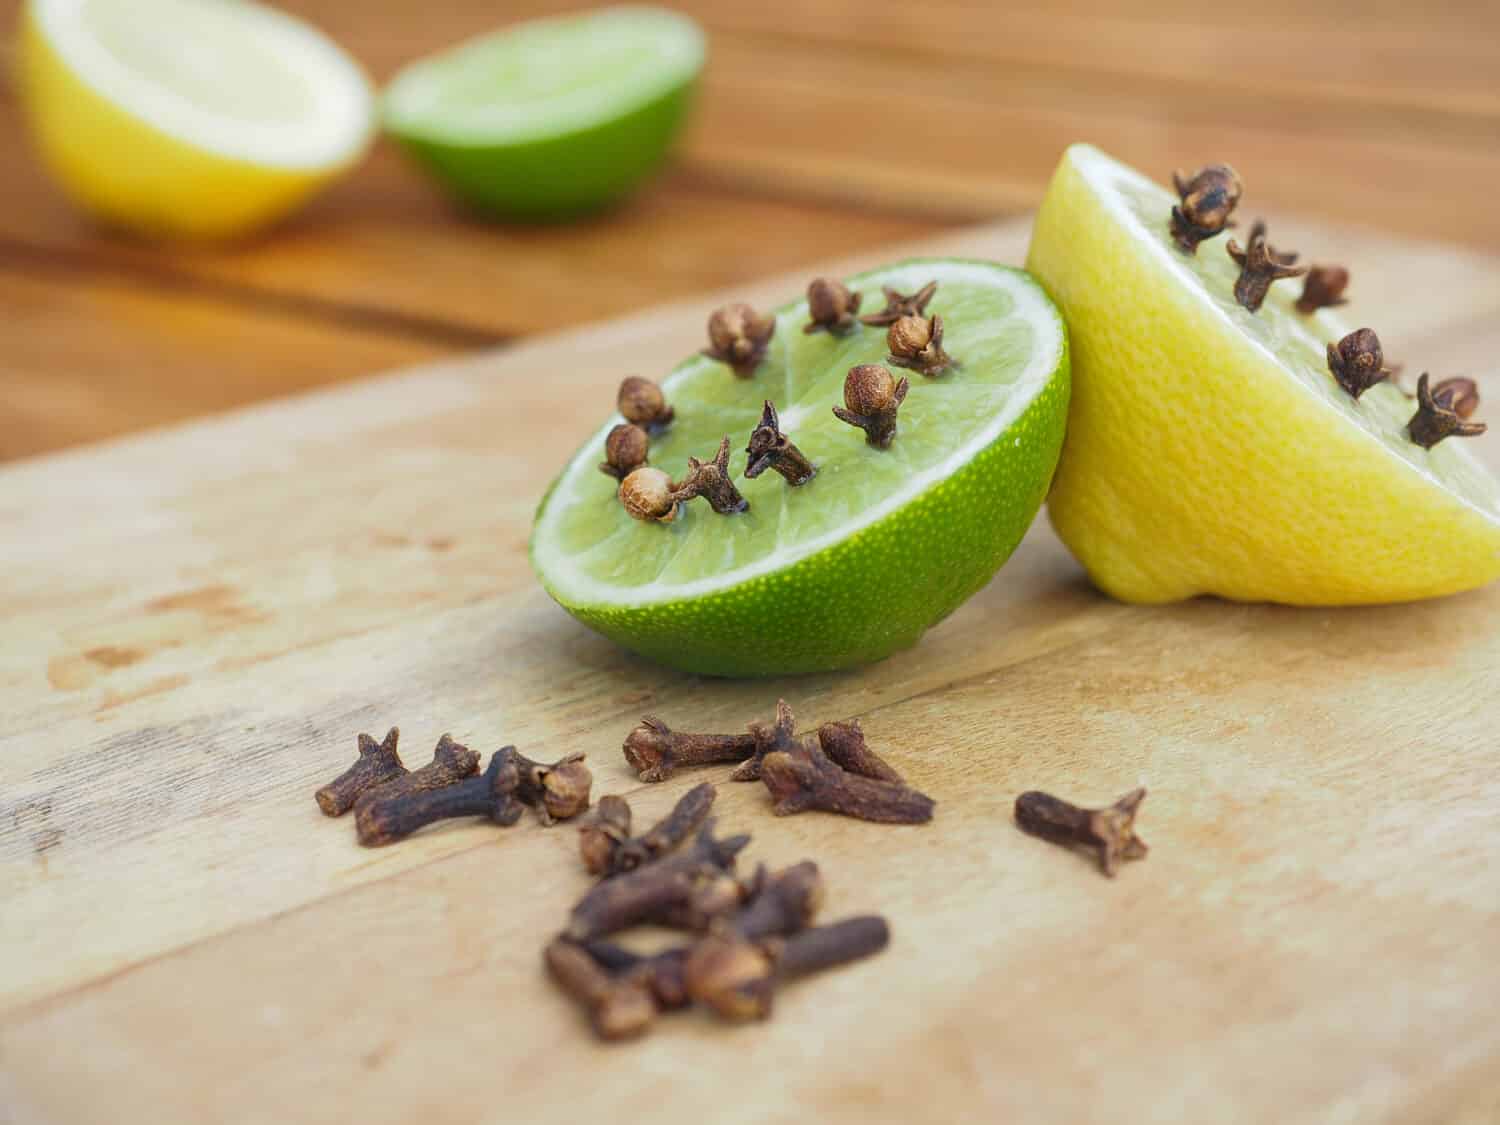 Repellenti naturali fatti in casa su tavola di legno.  Lime e limone con chiodi di garofano.